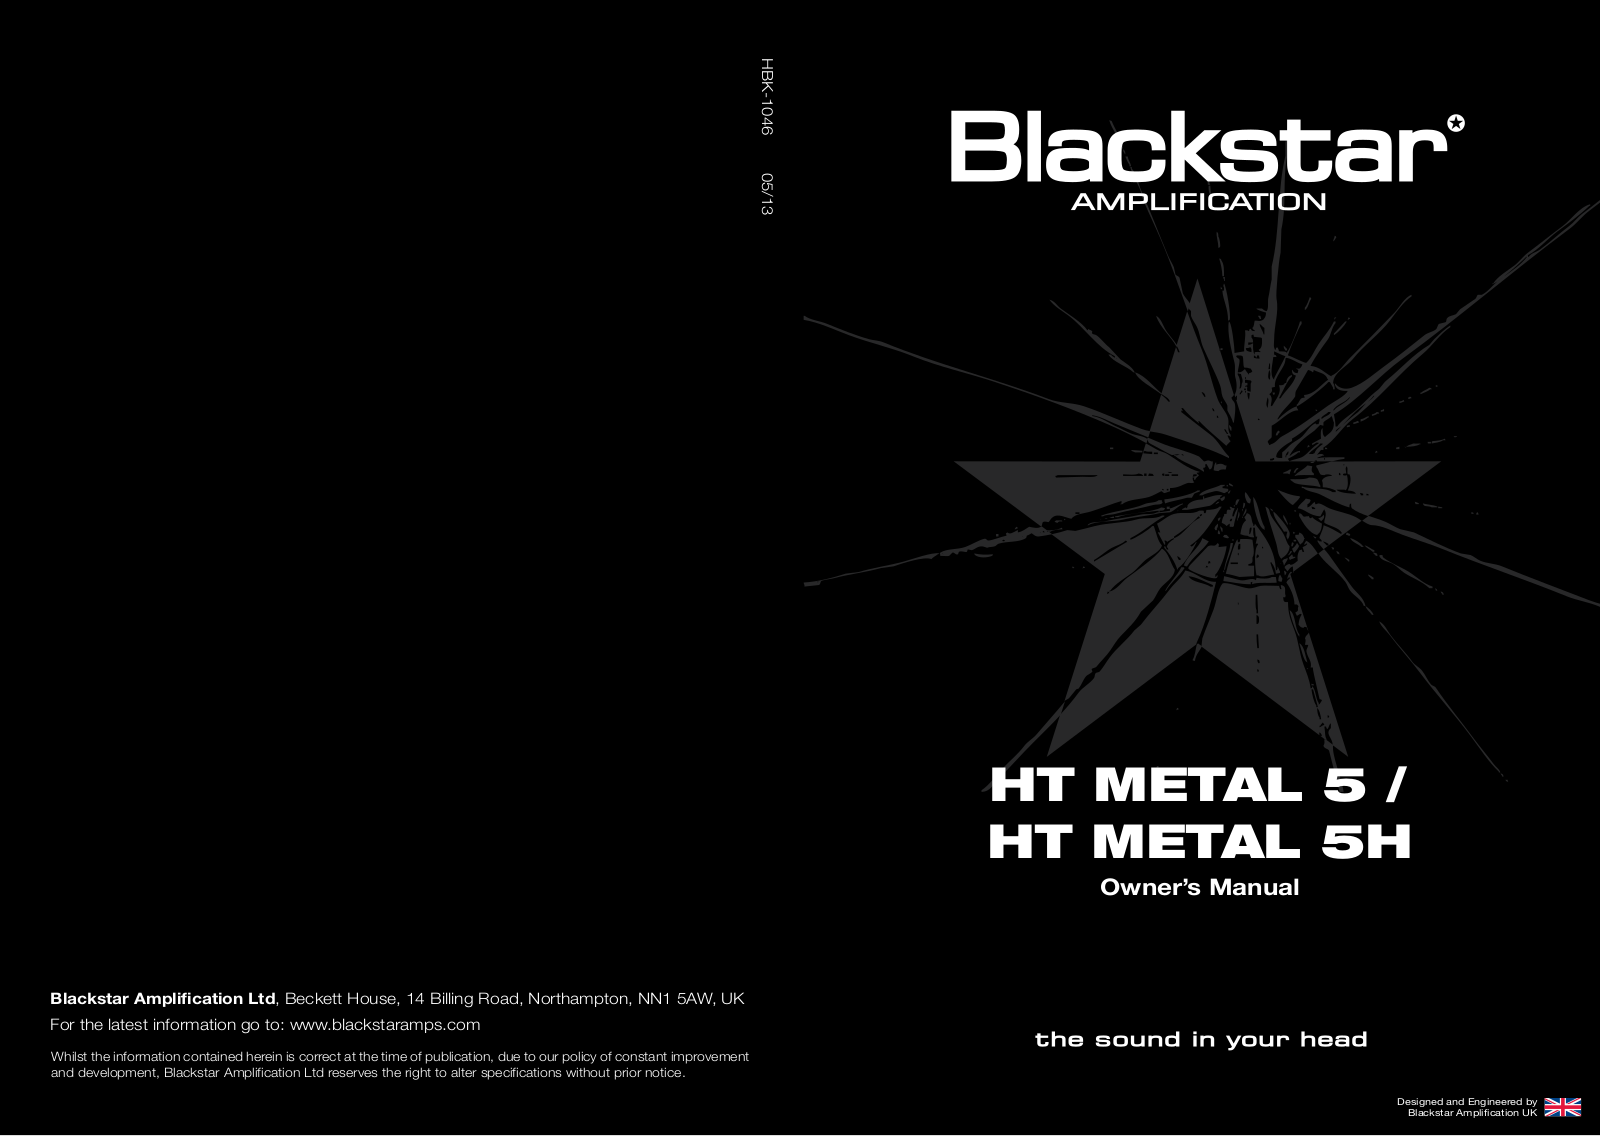 Blackstar HT Metal 5, HT Metal 5H Owner's Manual